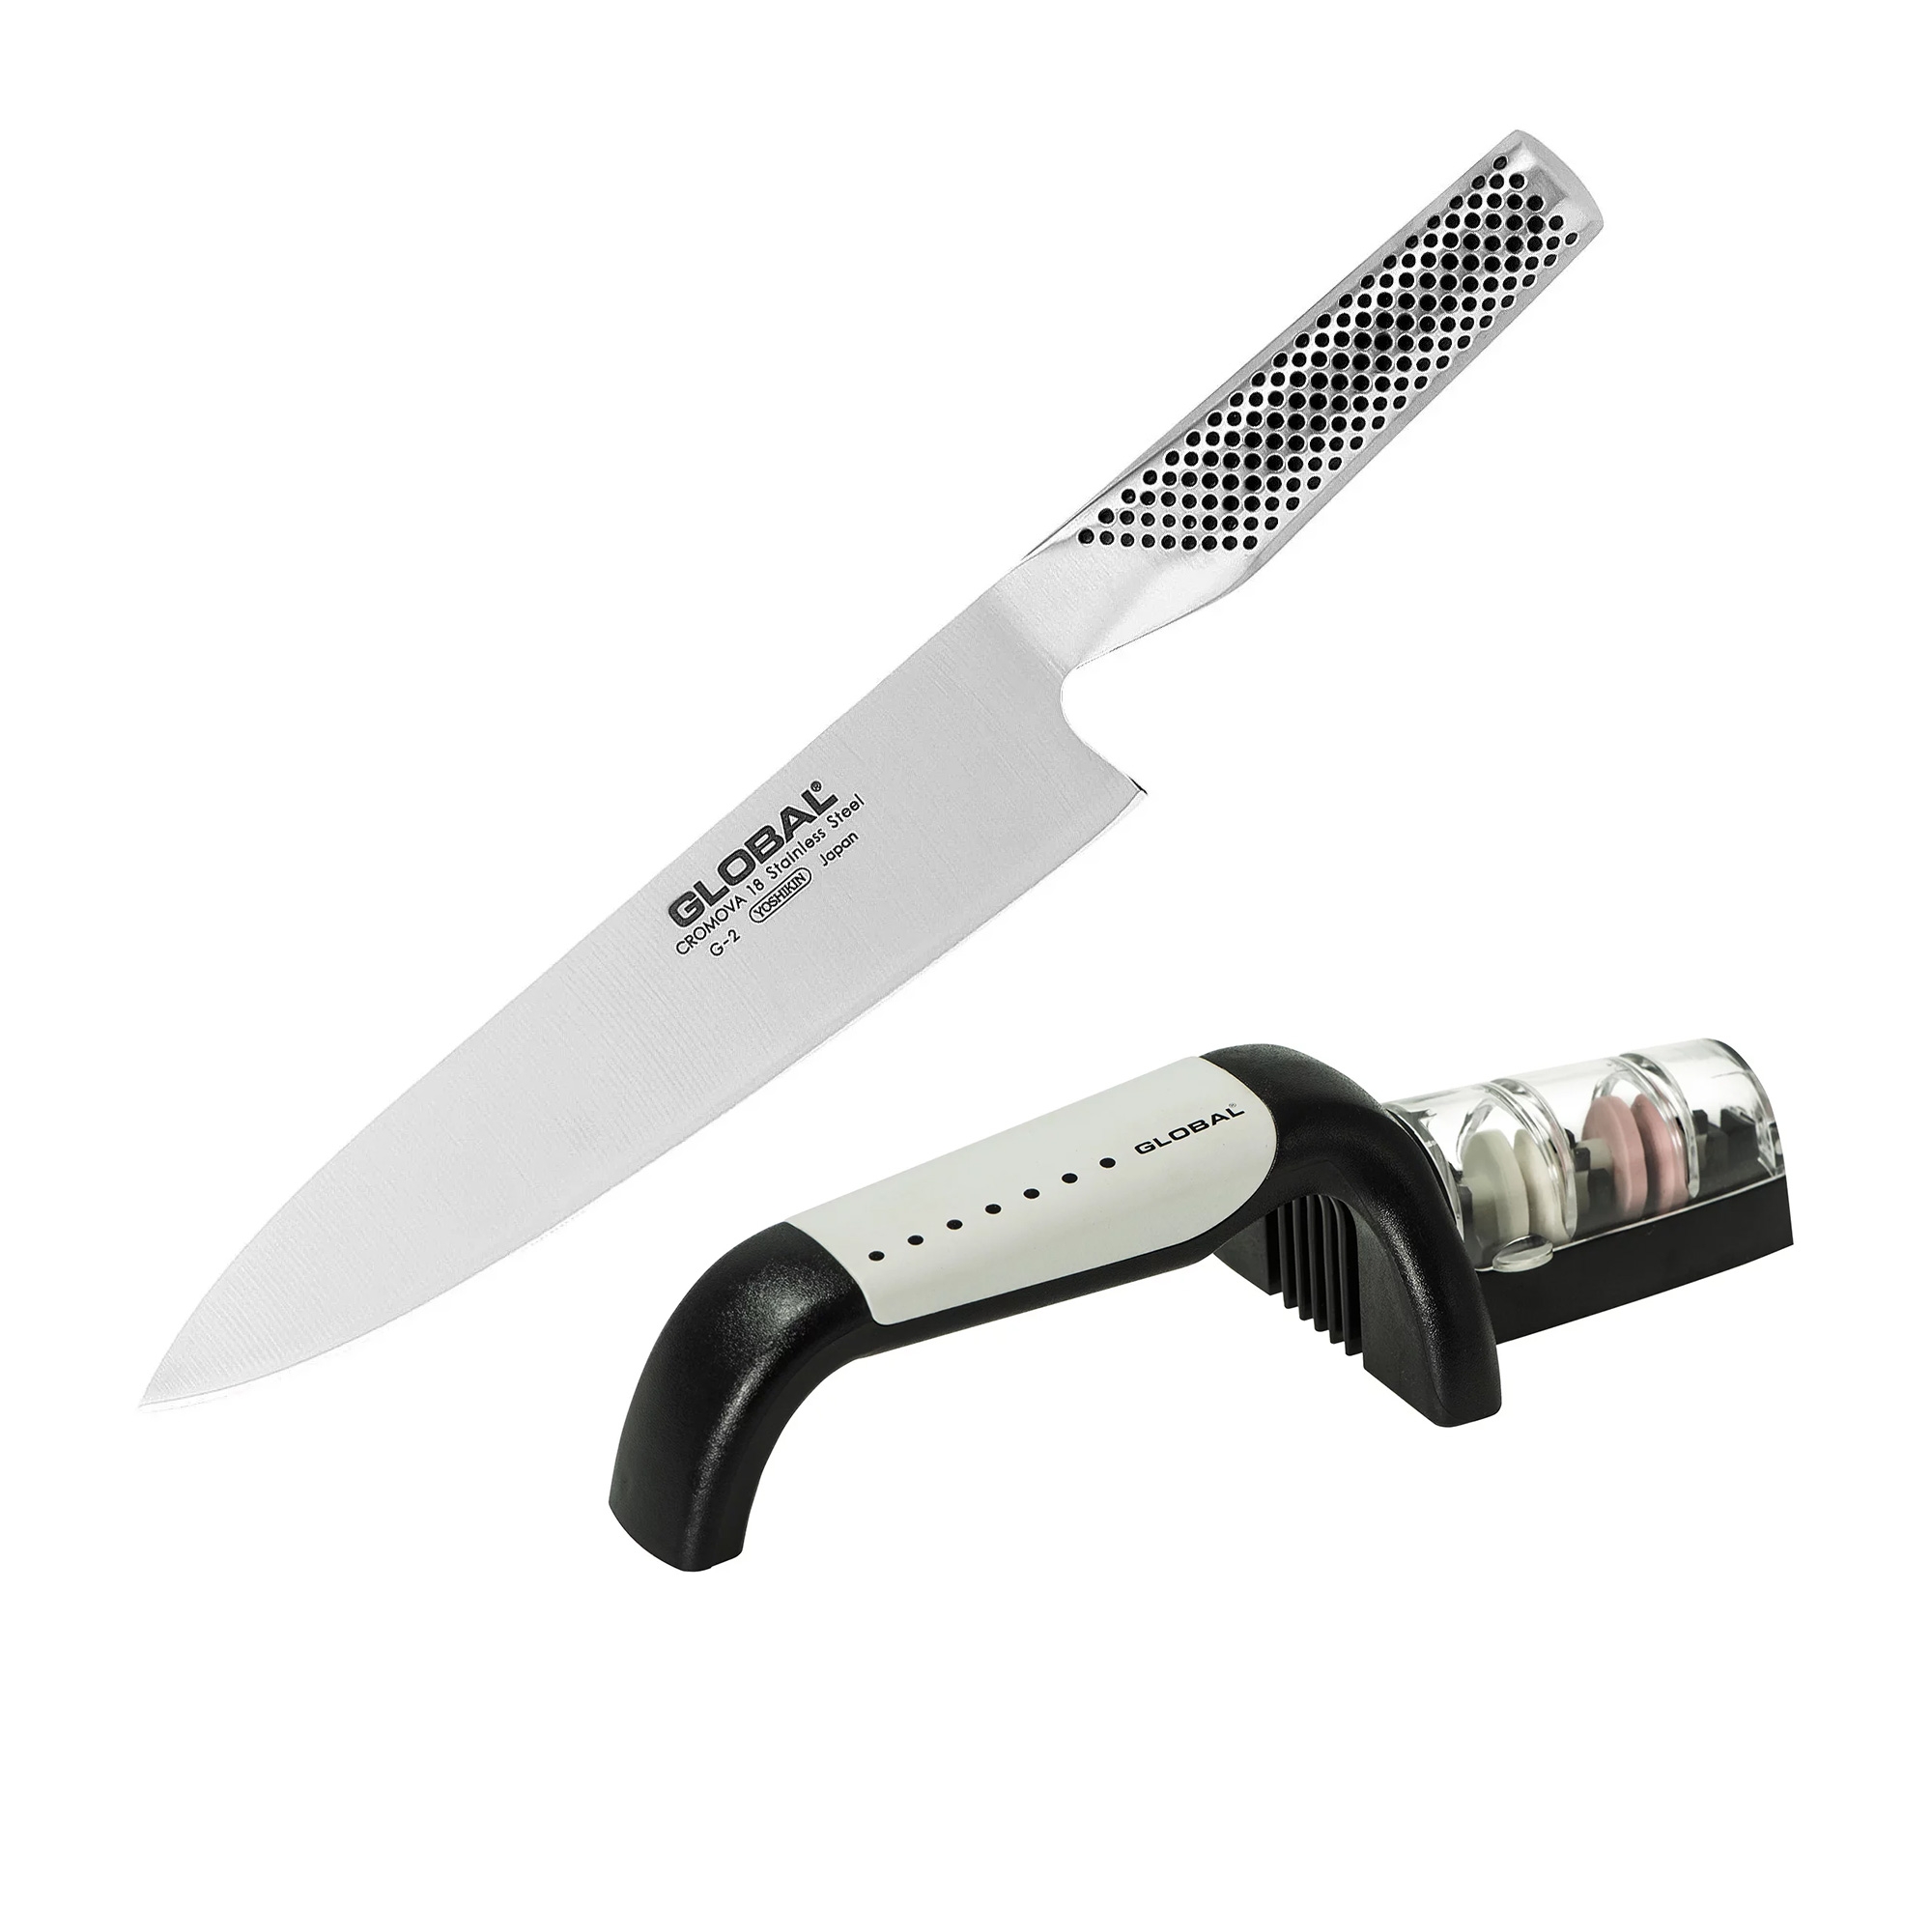 Global Cook's Knife 20cm & 2 Stage Sharpener Set Image 1